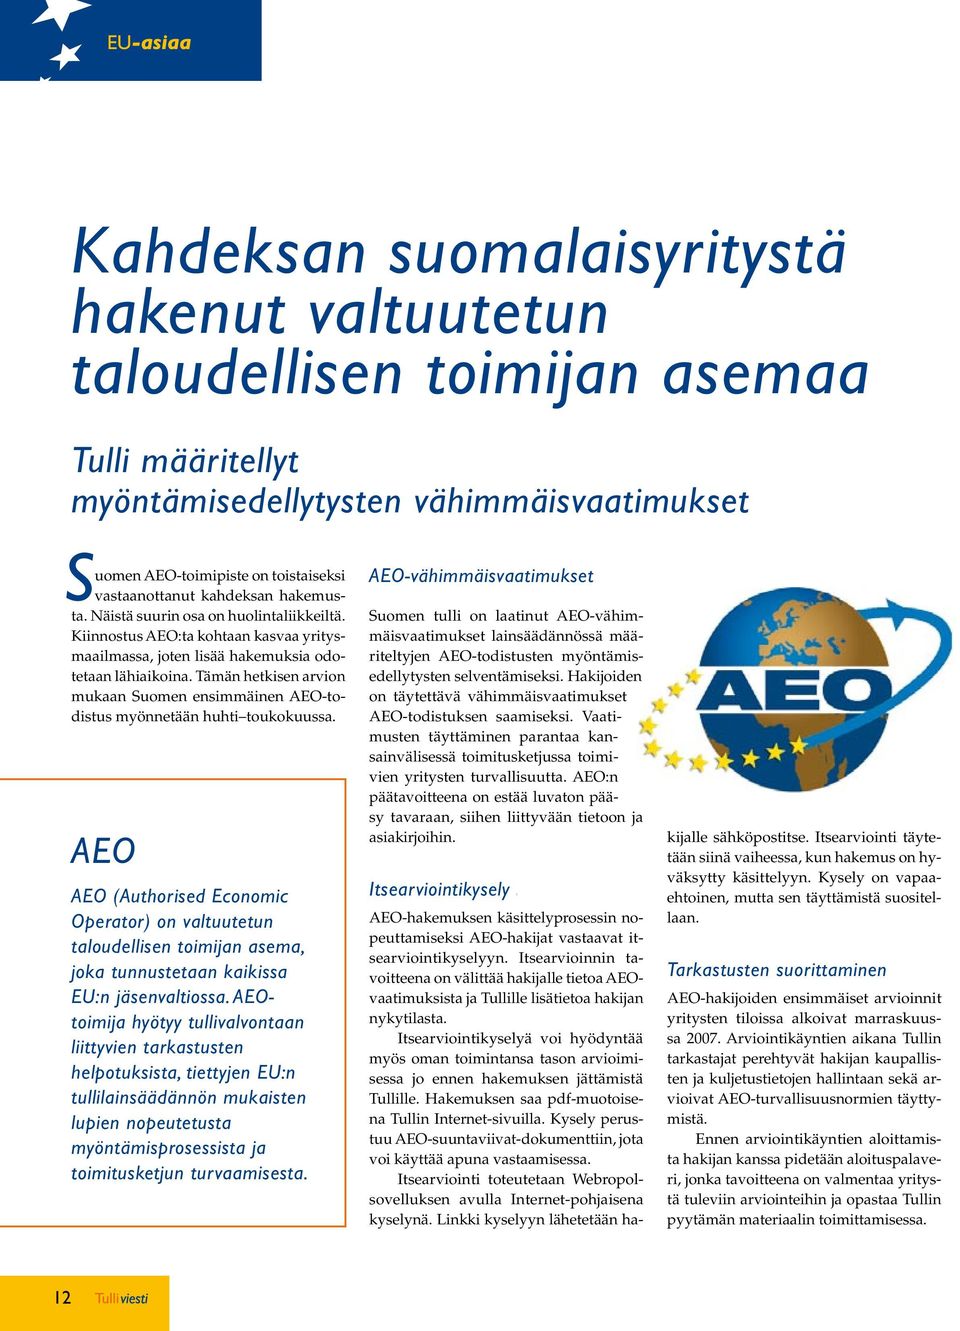 Tämän hetkisen arvion mukaan Suomen ensimmäinen AEO-todistus myönnetään huhti toukokuussa.